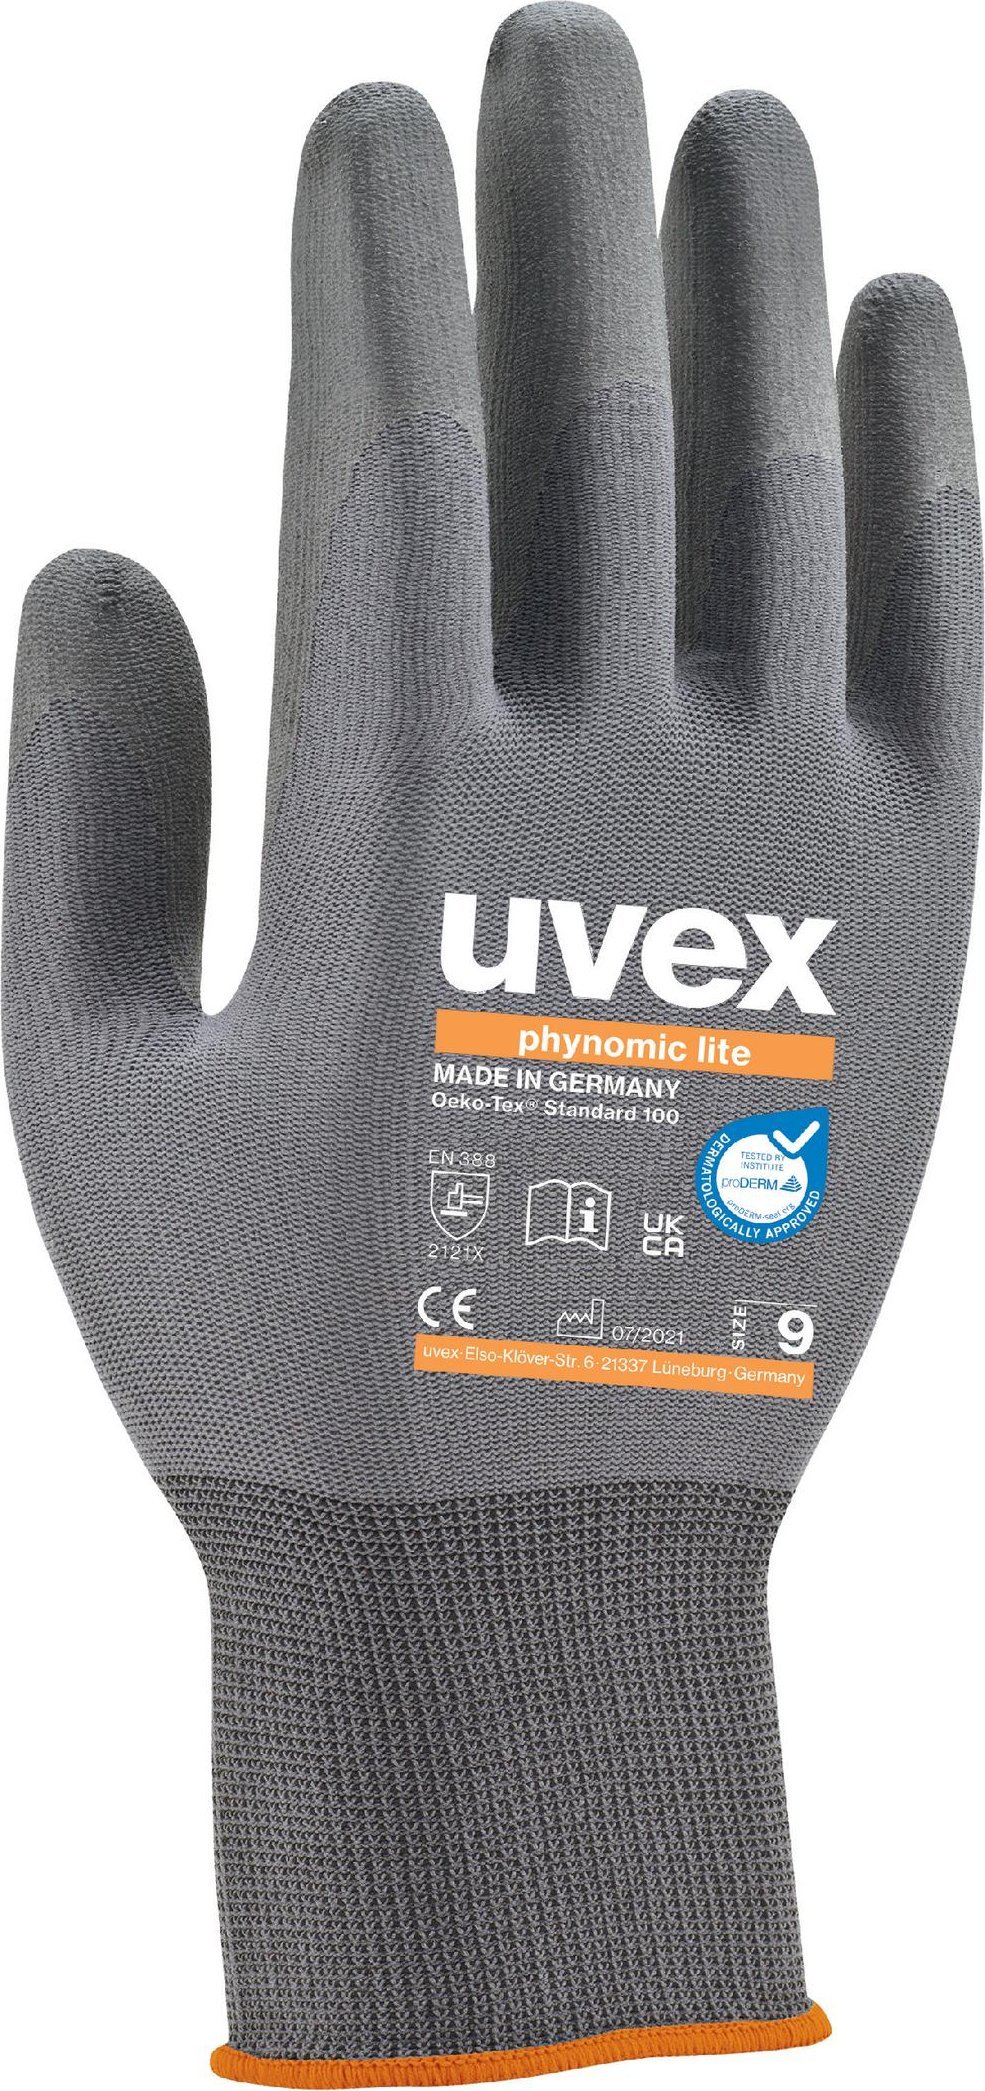 Zdjęcia - Artykuły BHP UVEX phynomic lite safety glove size 7 